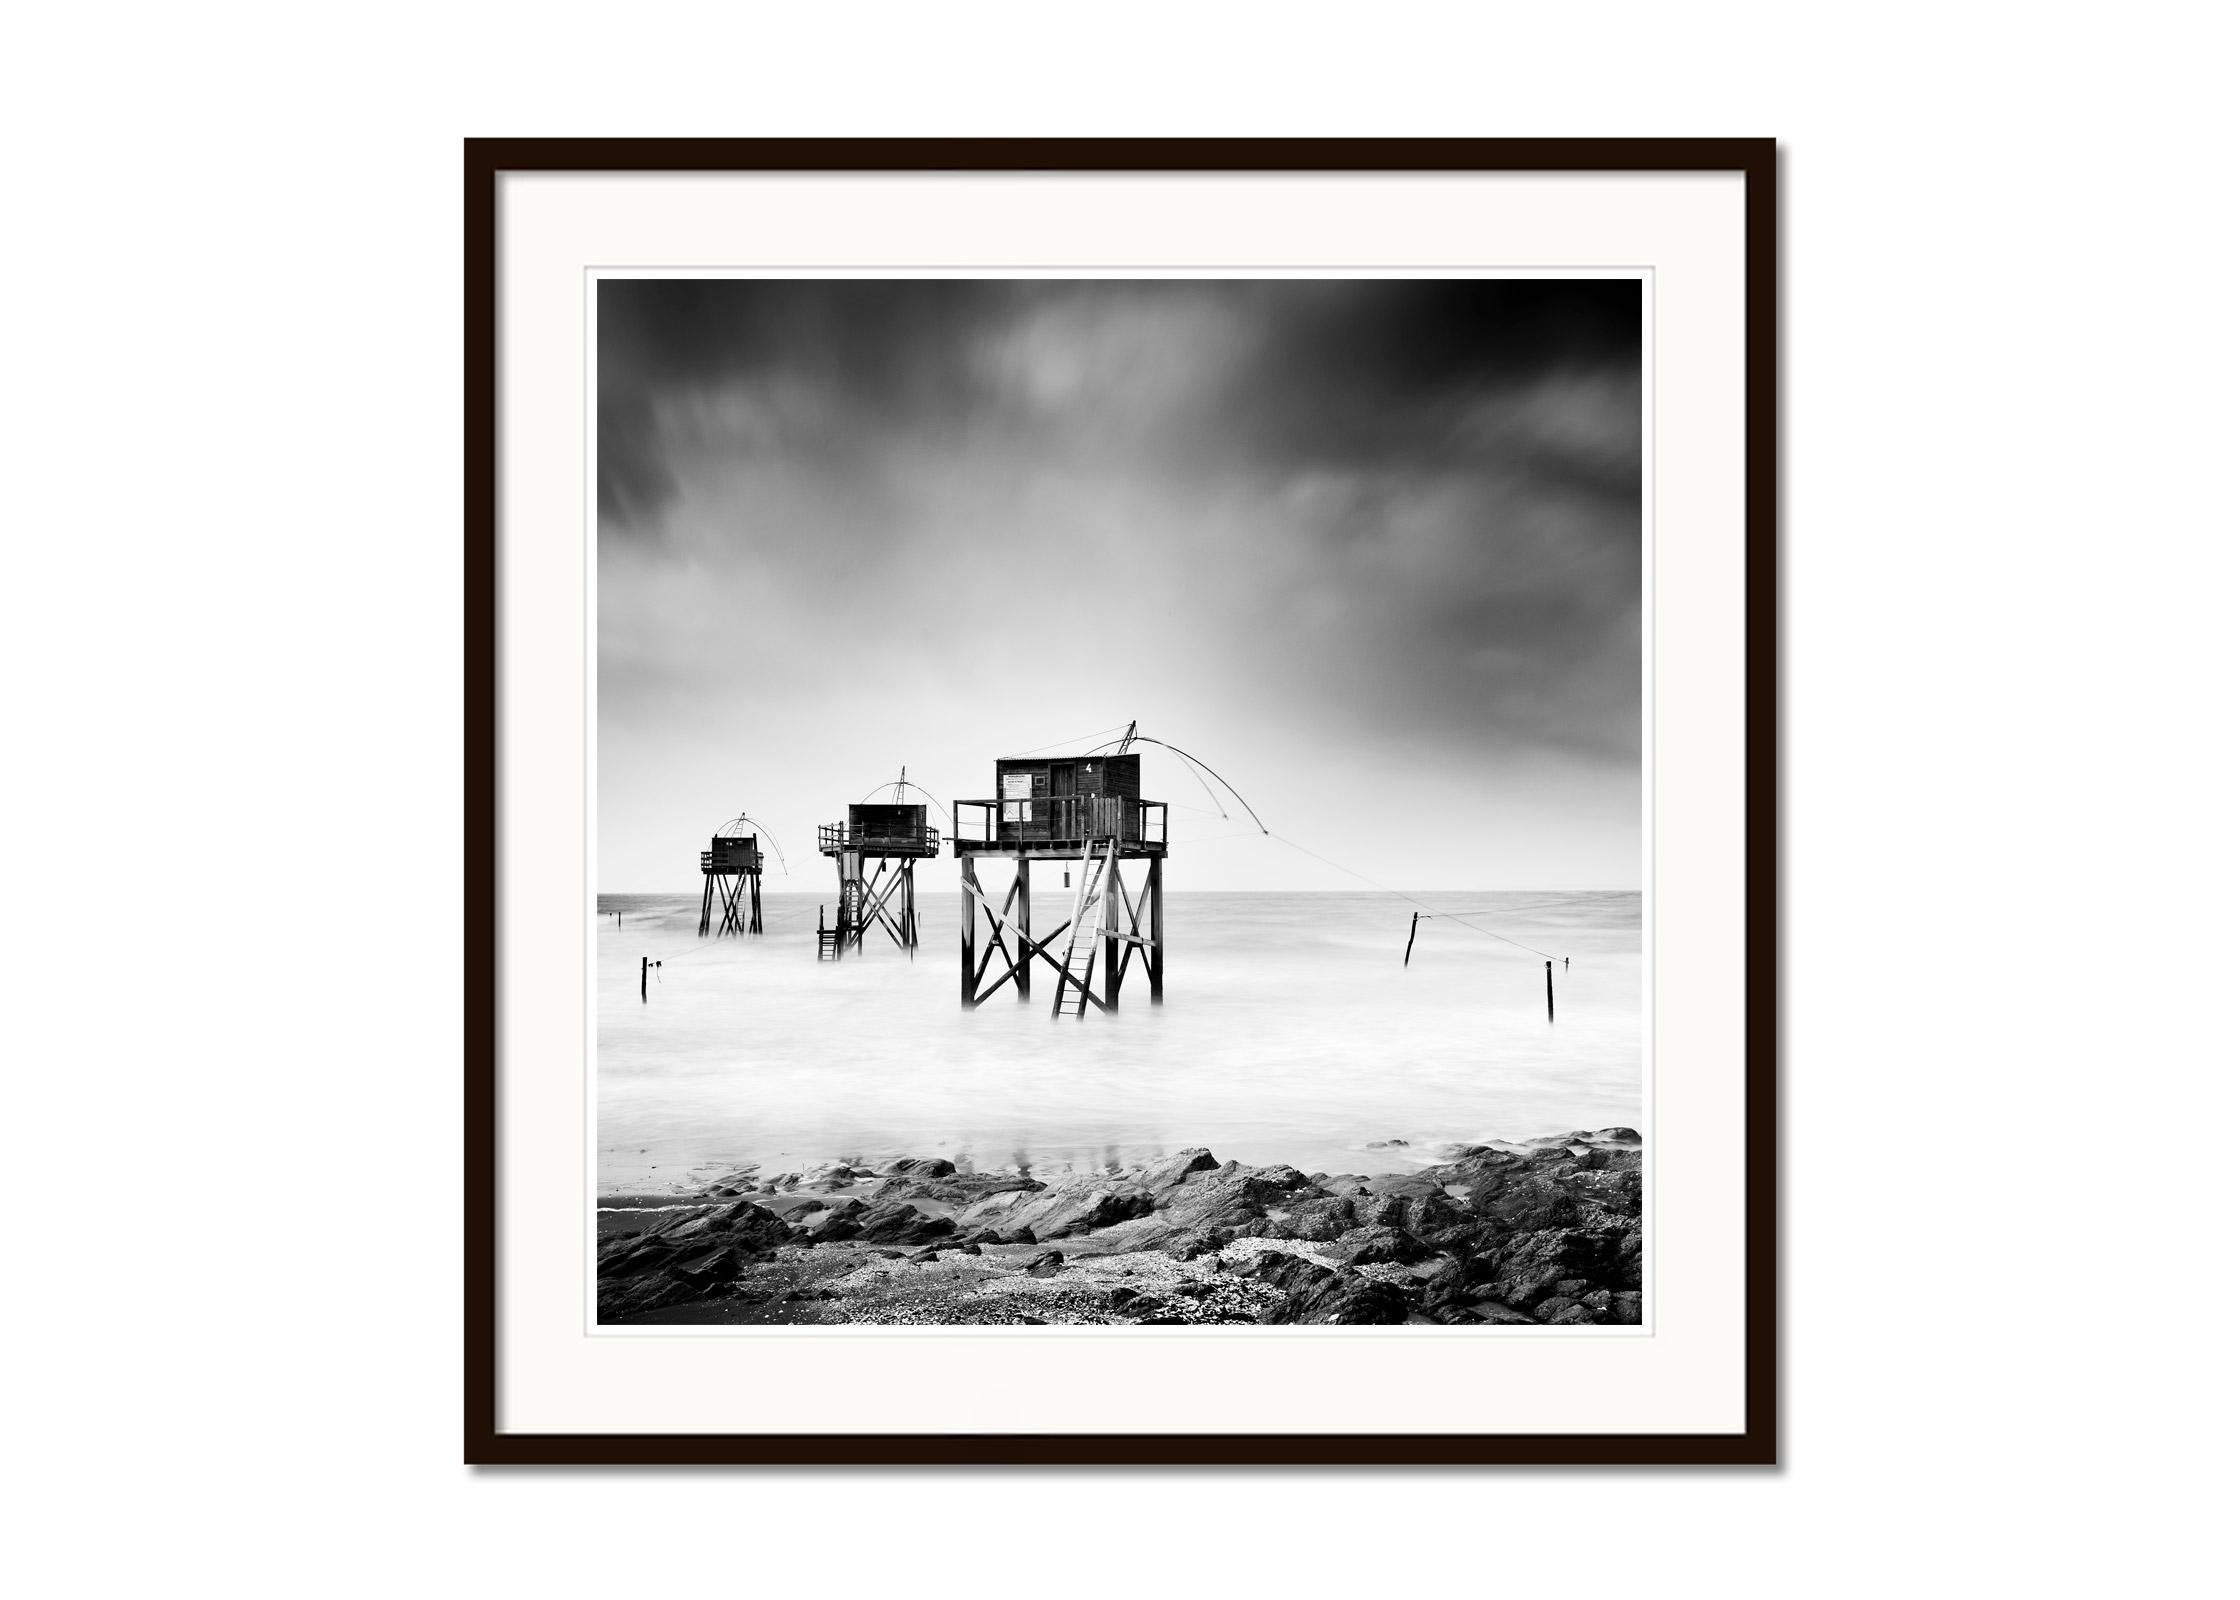 Fishing Hut auf Stilts, Carrelets, Schwarz-Weiß-Fotografie mit feiner Landschaftsfotografie  (Grau), Landscape Photograph, von Gerald Berghammer